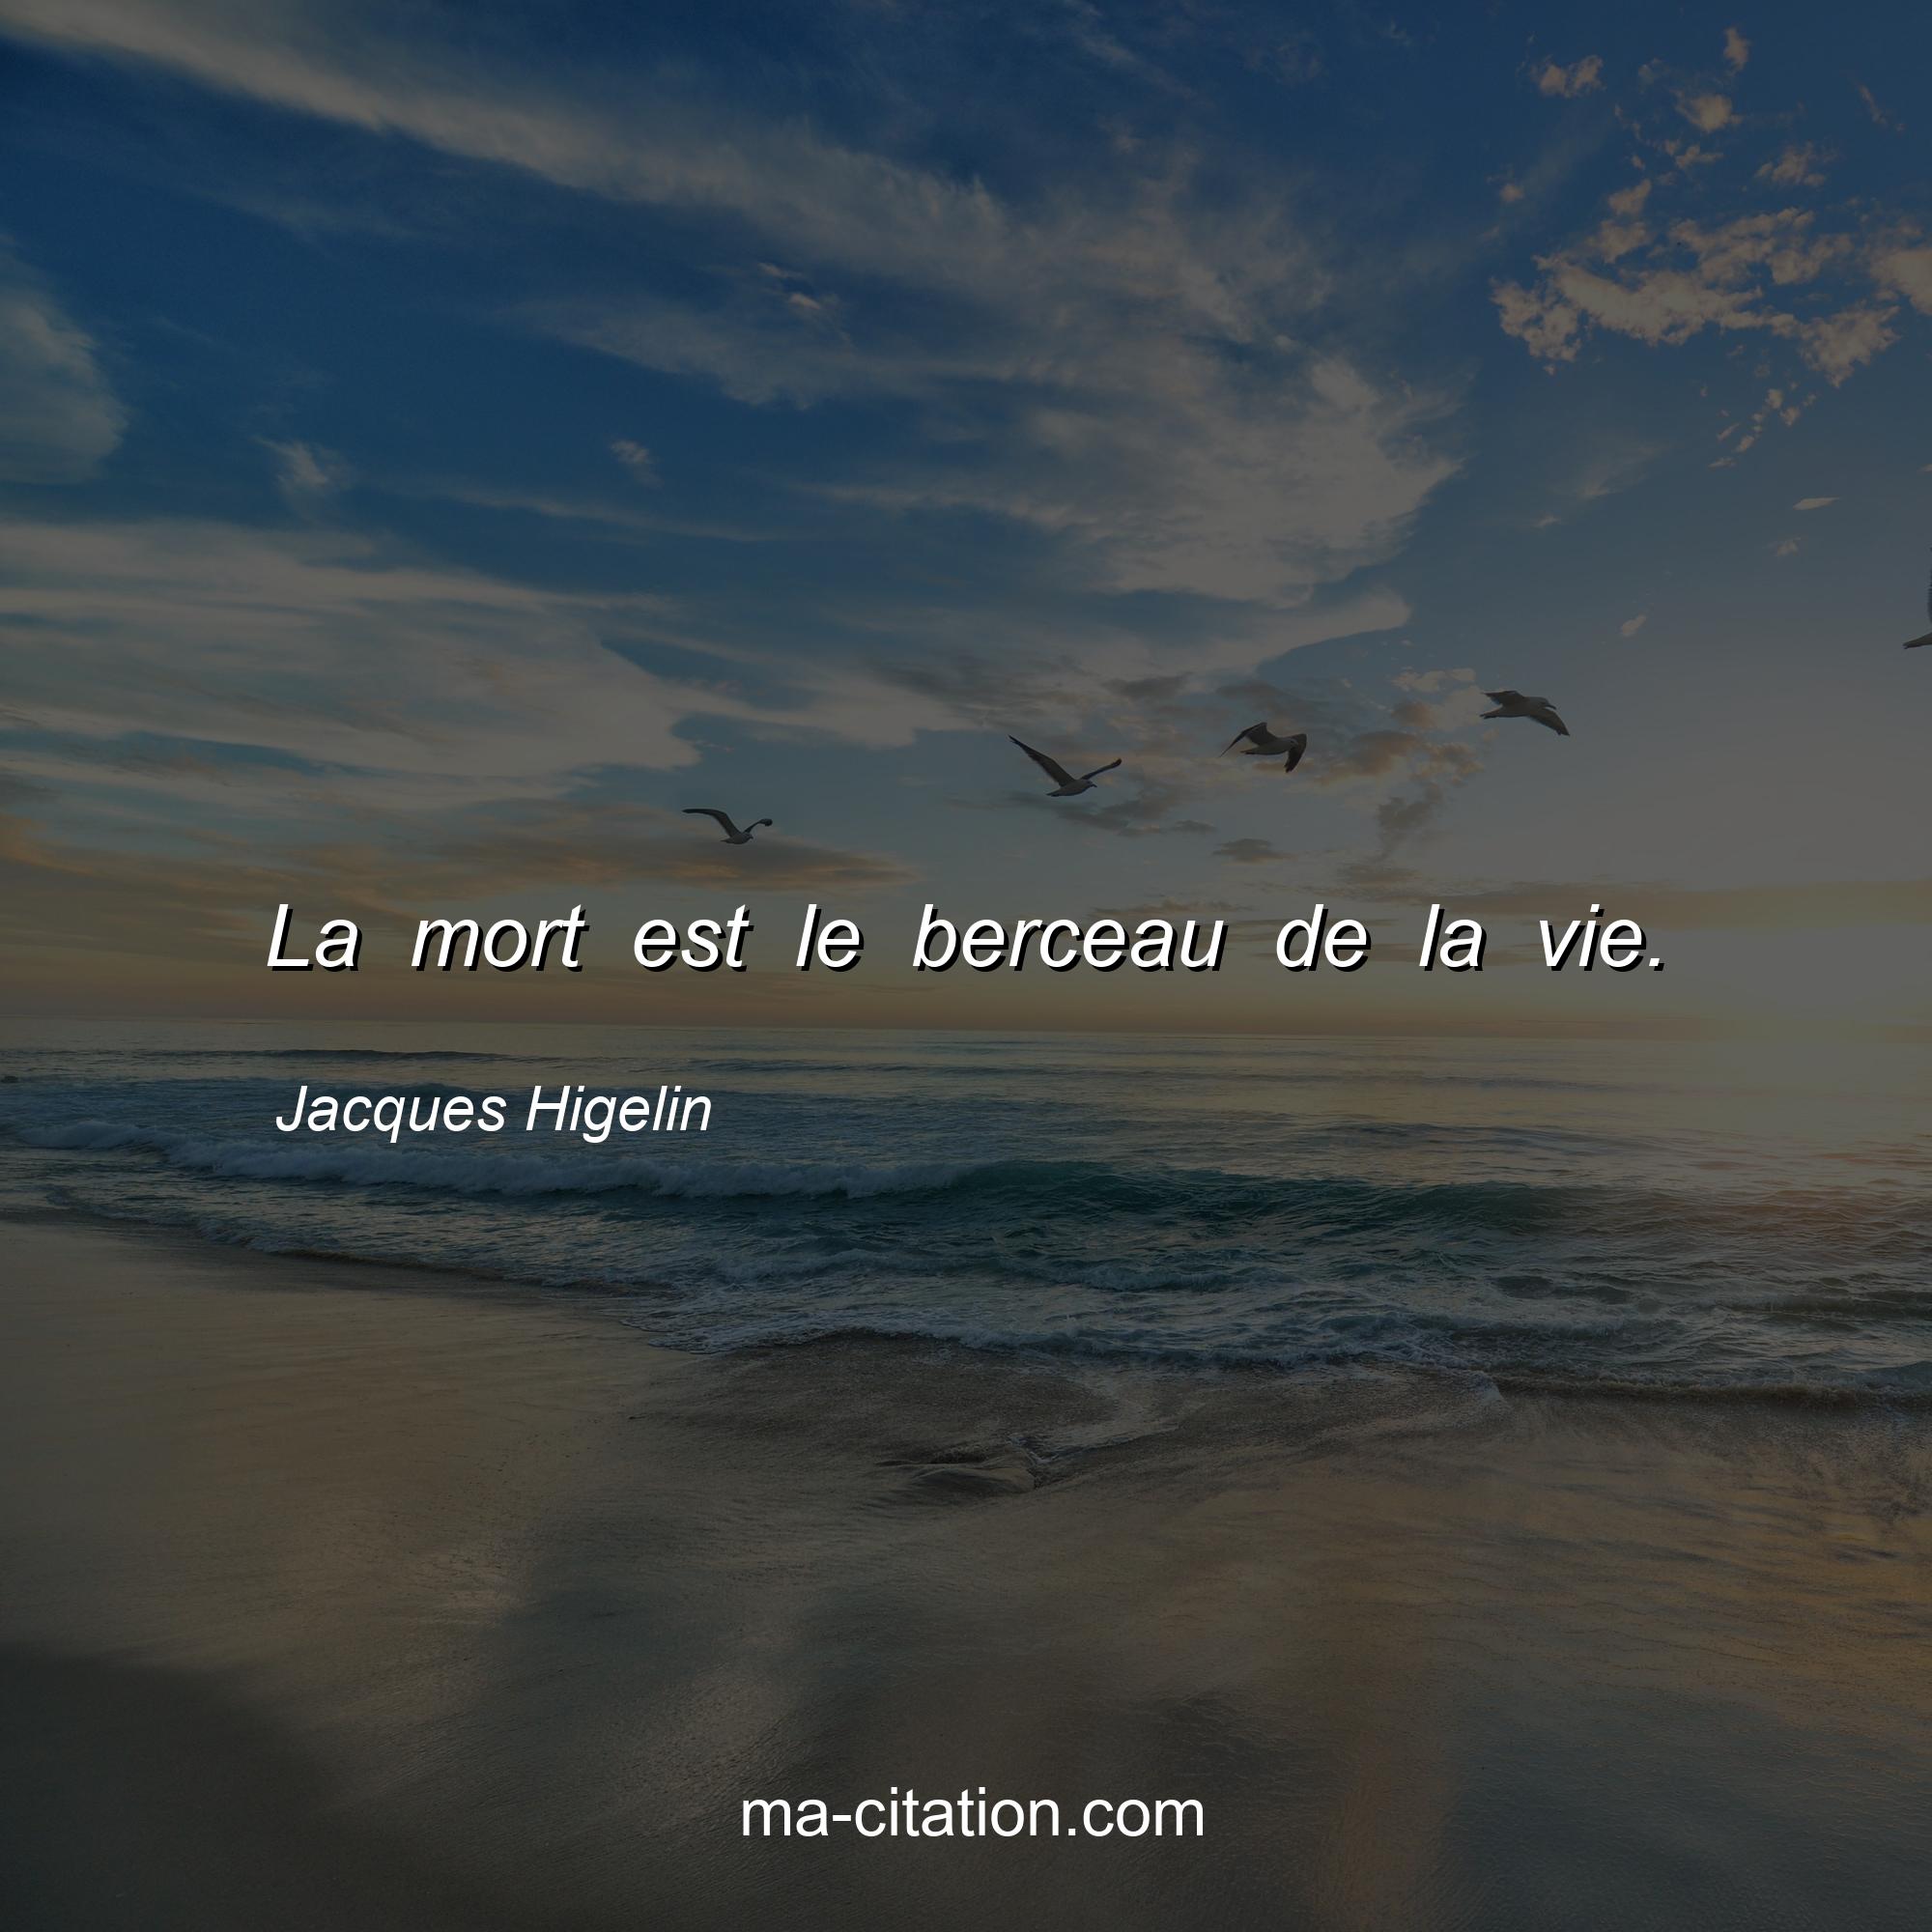 Jacques Higelin : La mort est le berceau de la vie.